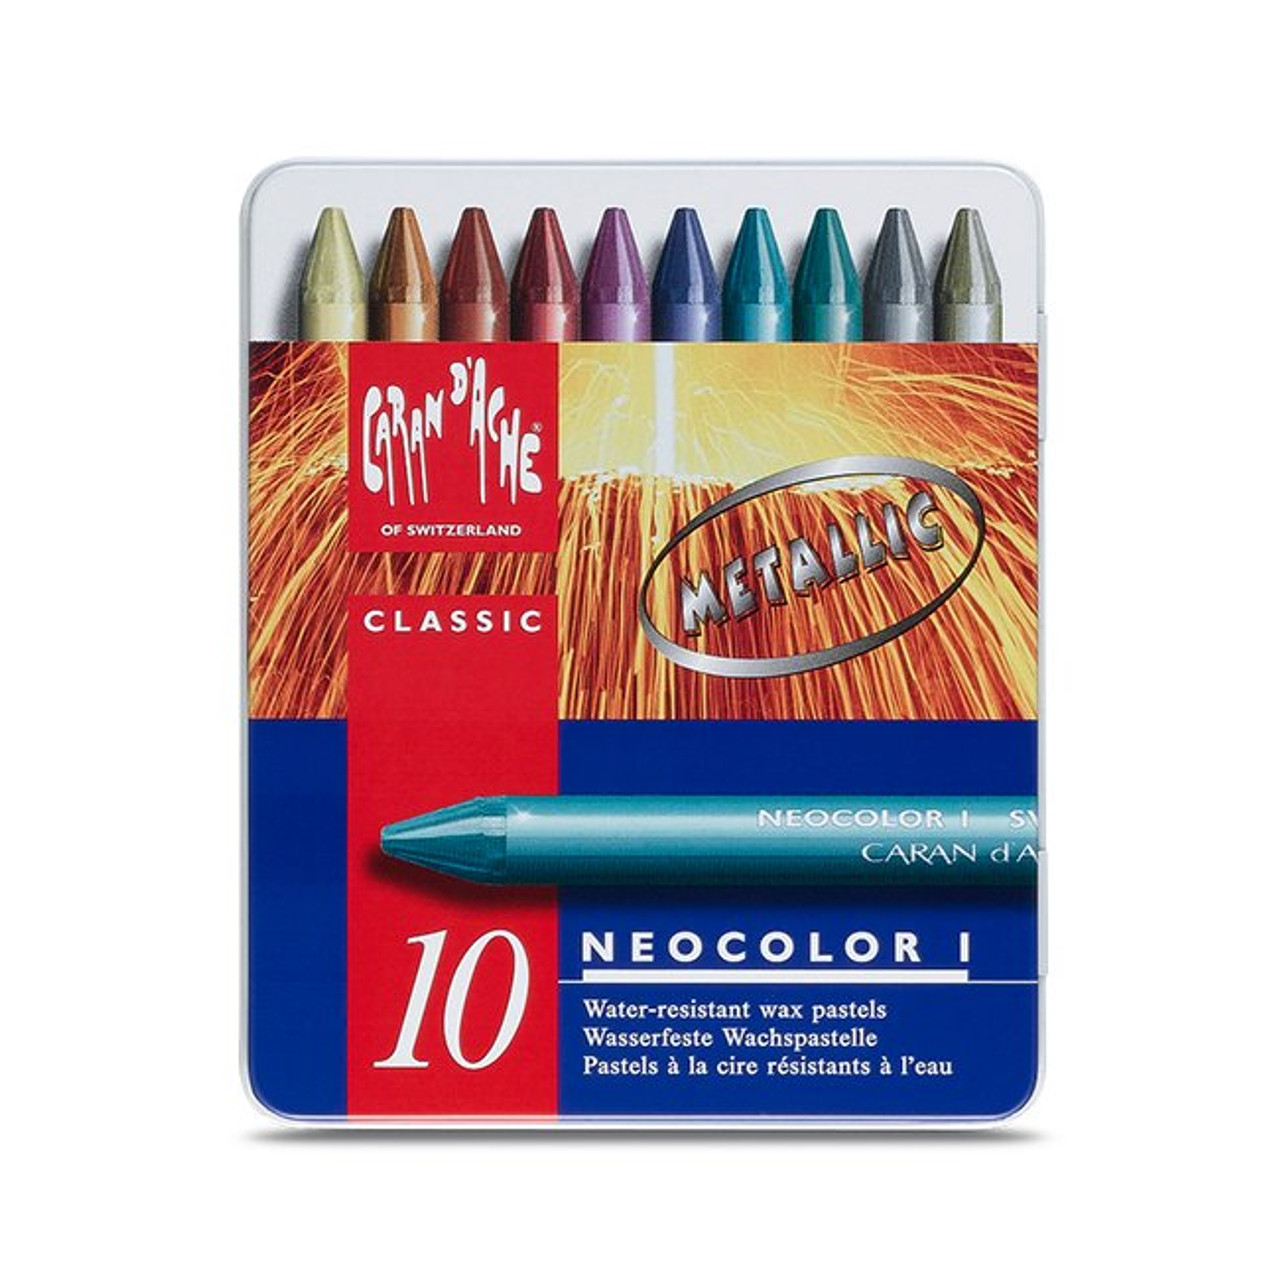 Caran D'Ache Classic Neocolor I, 10 Assorted Metallic Colors